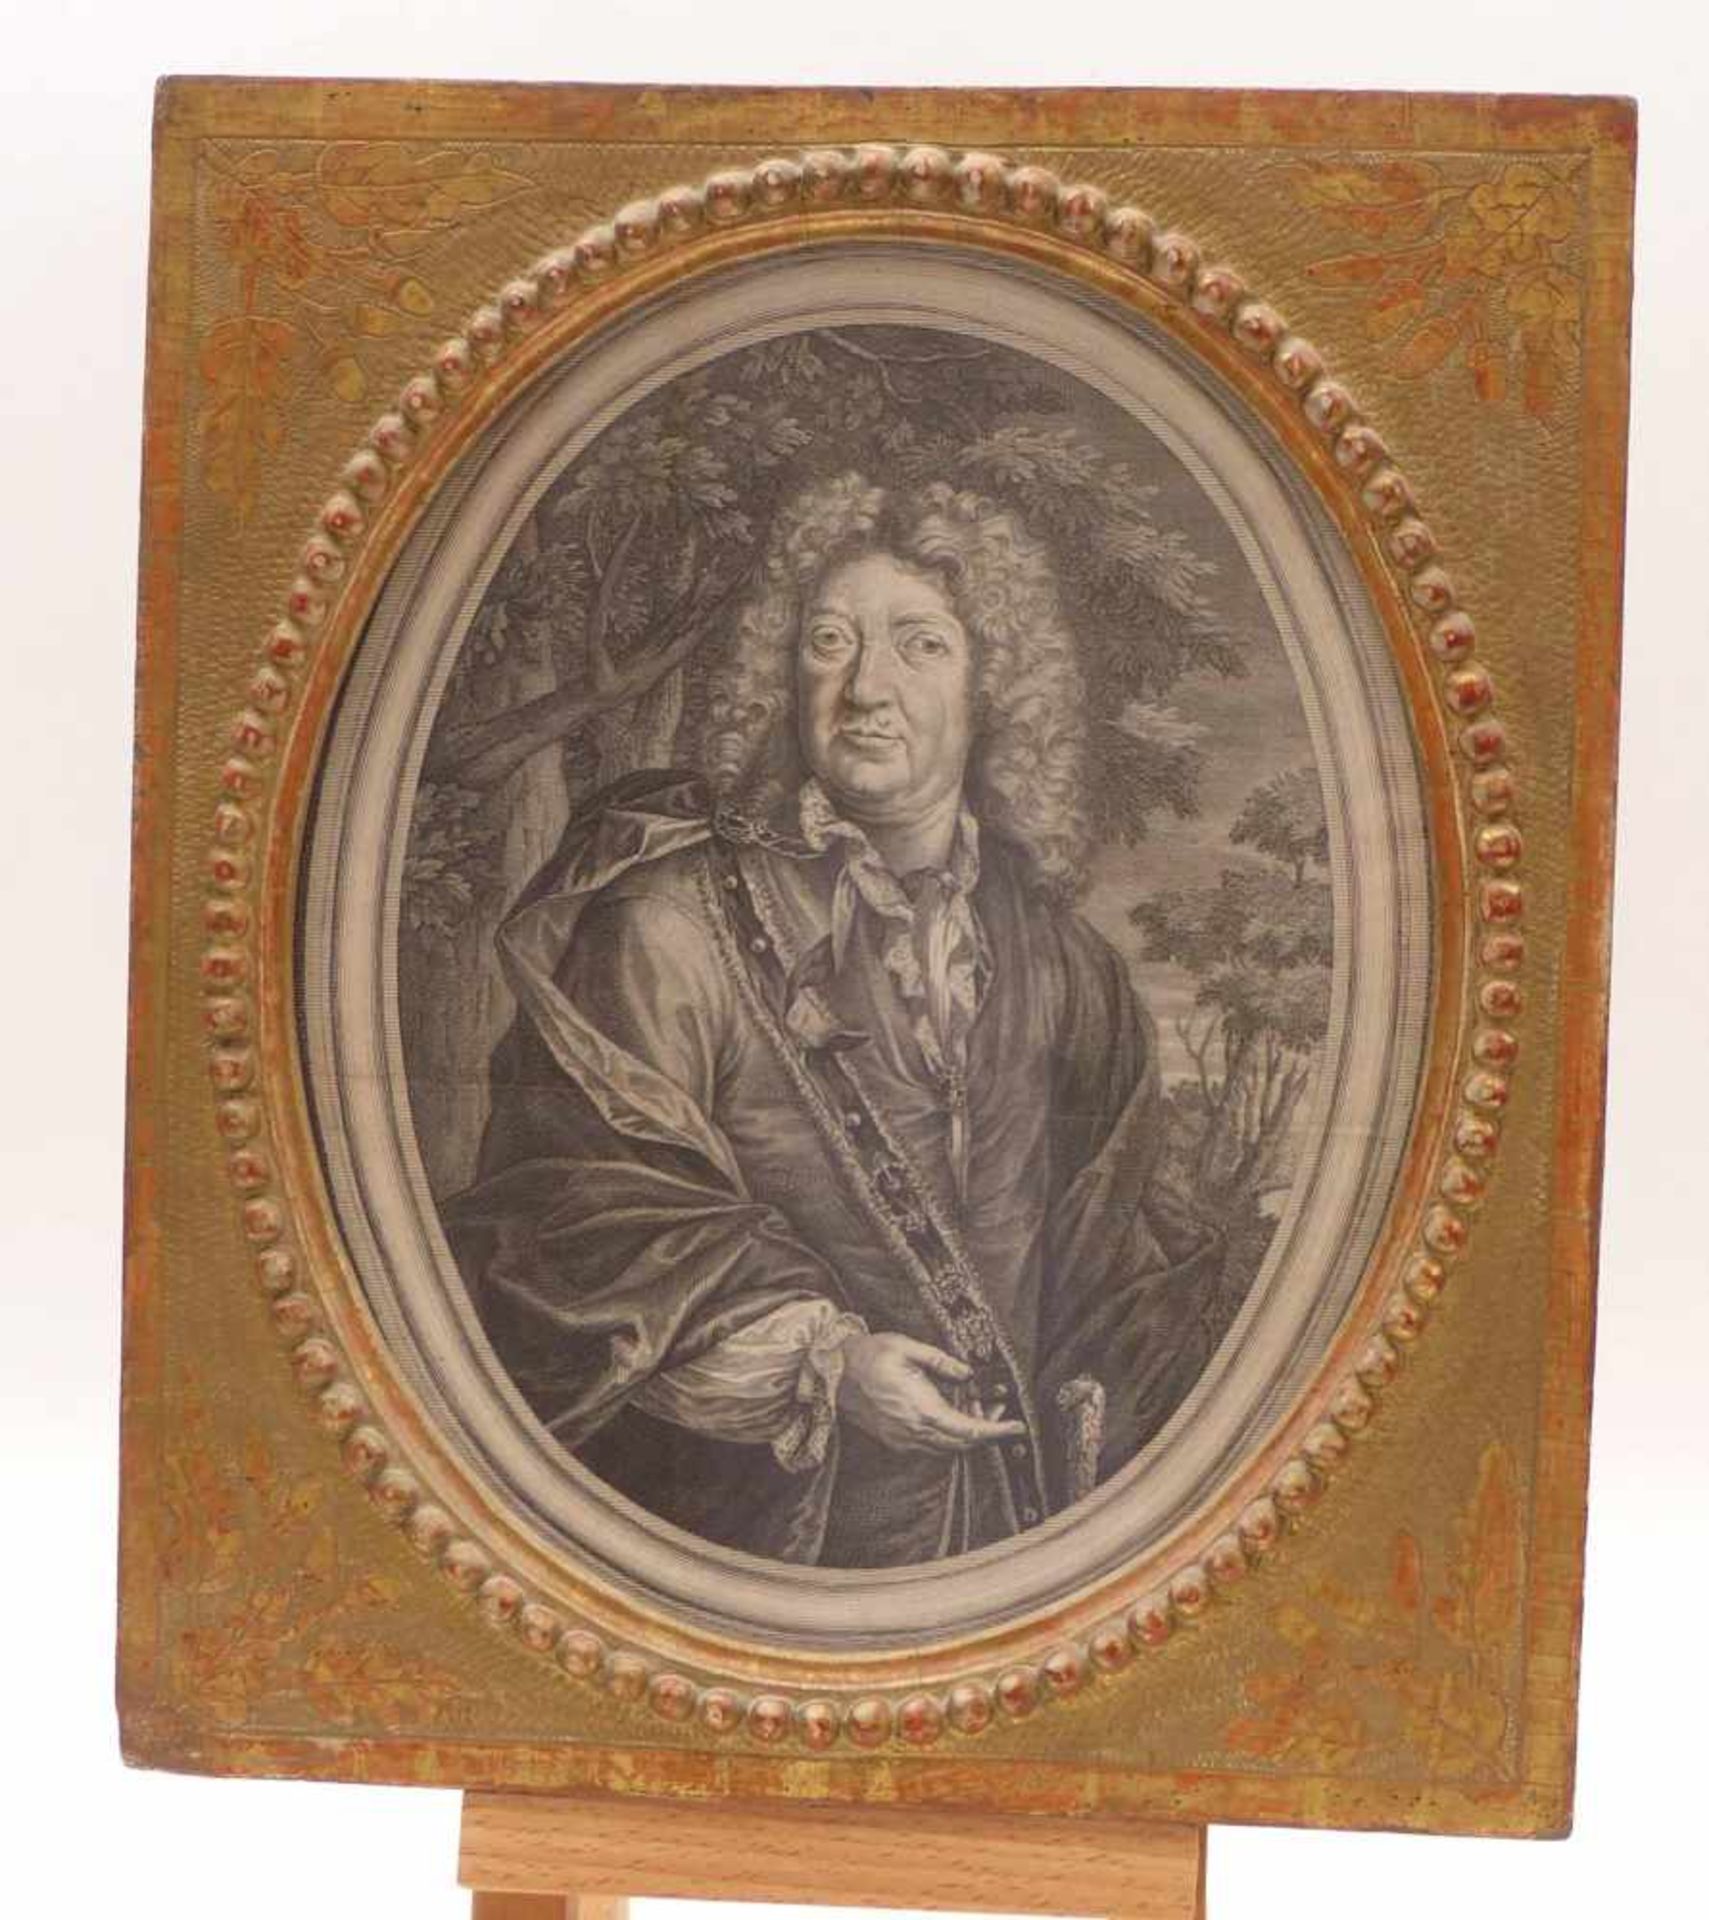 Böllmann, HieronymusBildnis des Georgivs Bvrcard. Löffelholz a Colberg(Um 1706-30 tätig in Nürnberg) - Bild 2 aus 2